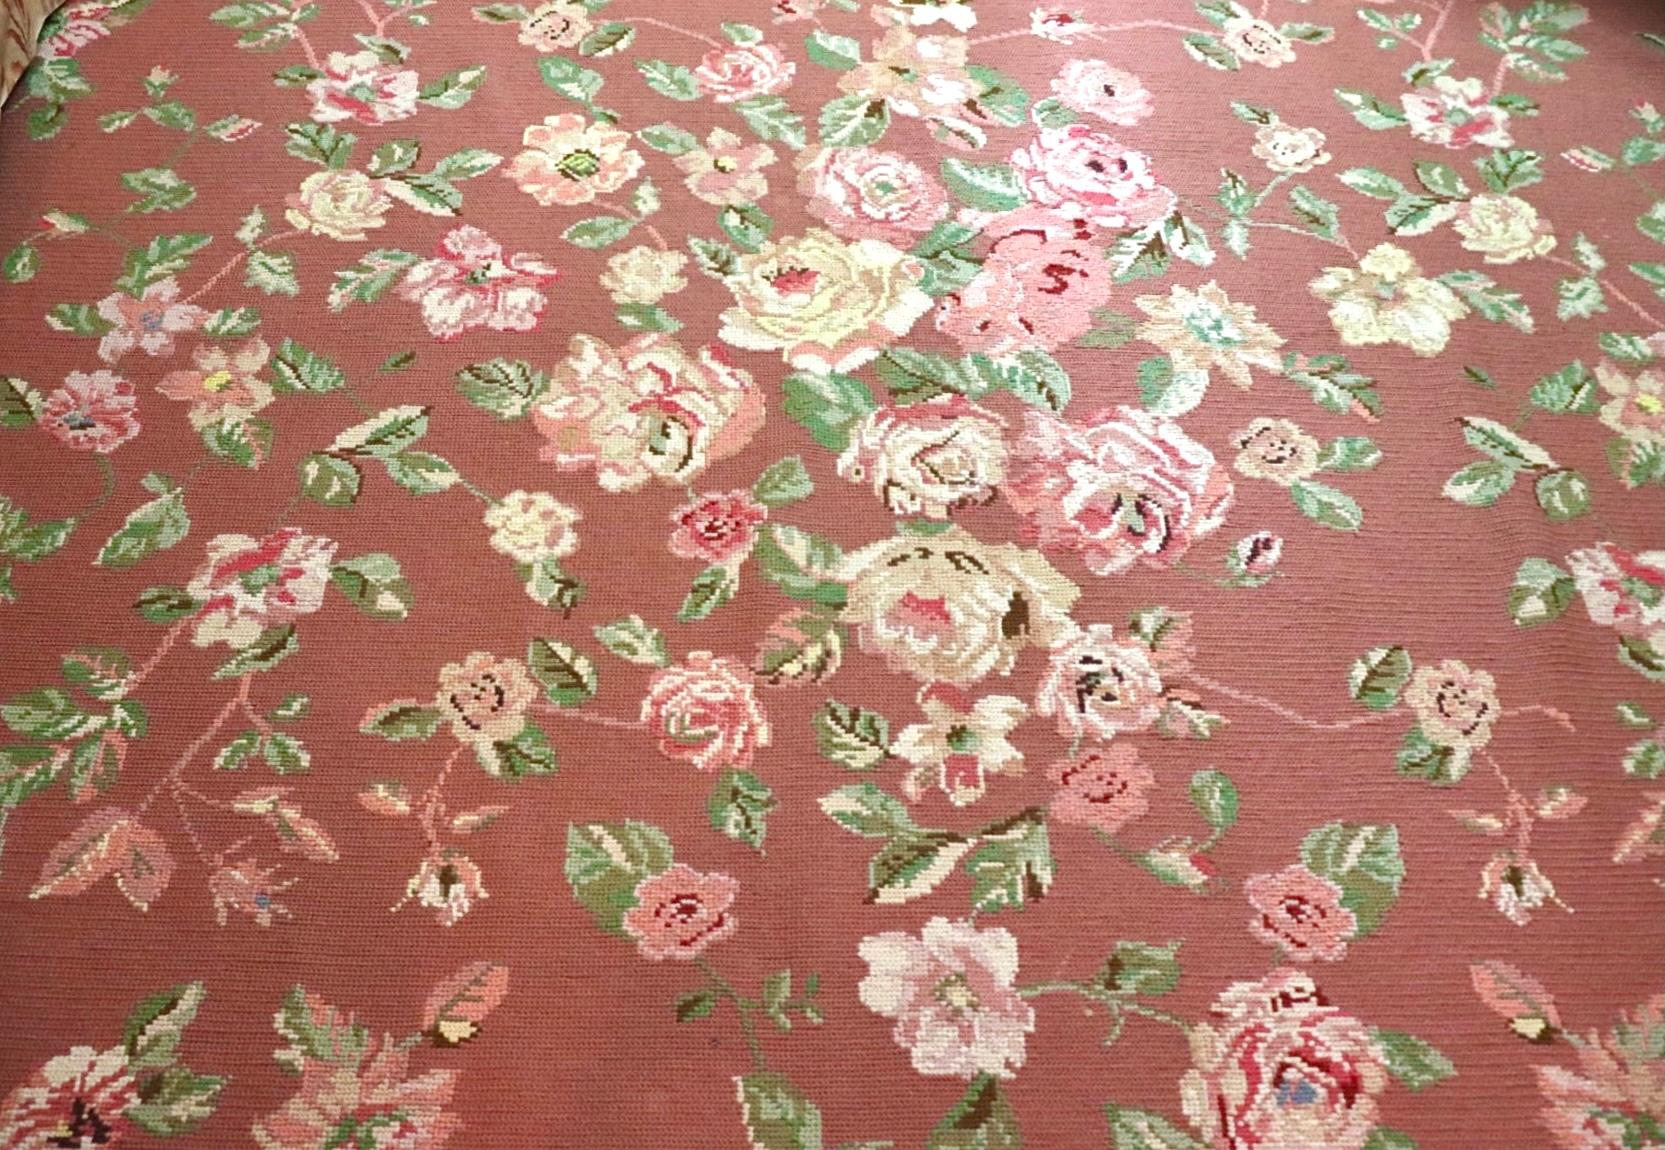 Vintage feine portugiesische Nadelspitze Rose Teppich Schumacher, PFM Teppich, handgefertigt. 

Feiner portugiesischer Gros-Point-Teppich im Vintage-Stil - das staubrosa Feld mit einer Fülle von Rosentrauben auf Ranken innerhalb einer einfarbigen,